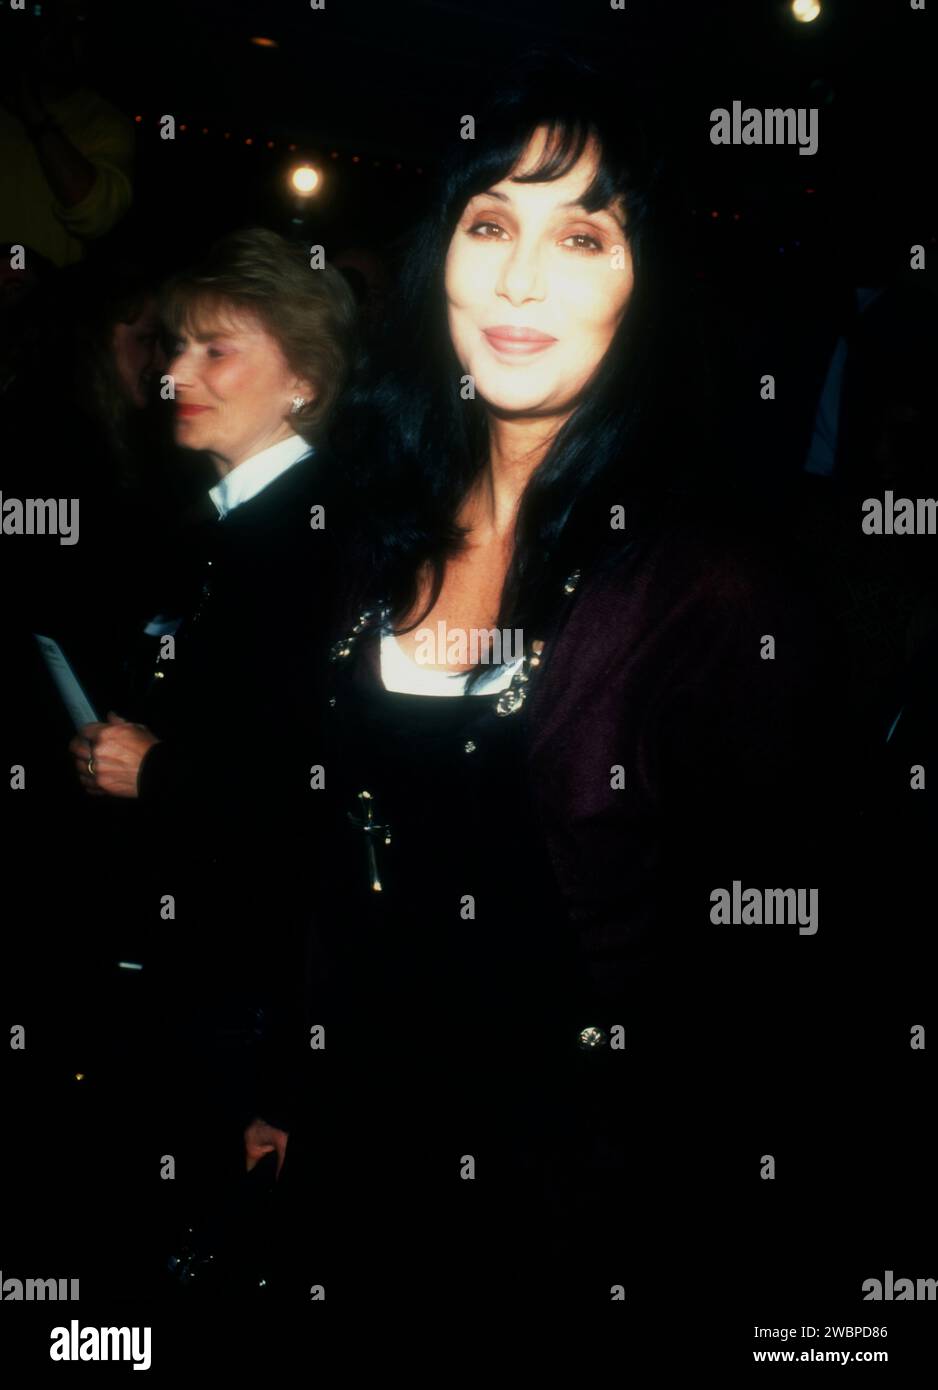 Los Angeles, Kalifornien, USA 6. November 1996 Sängerin/Schauspielerin Cher besucht am 6. November 1996 die Premiere von Miramax Films 'The English Patient' am American Film Institute im Mann Bruin Theatre in Los Angeles, Kalifornien, USA. Foto: Barry King/Alamy Stock Photo Stockfoto